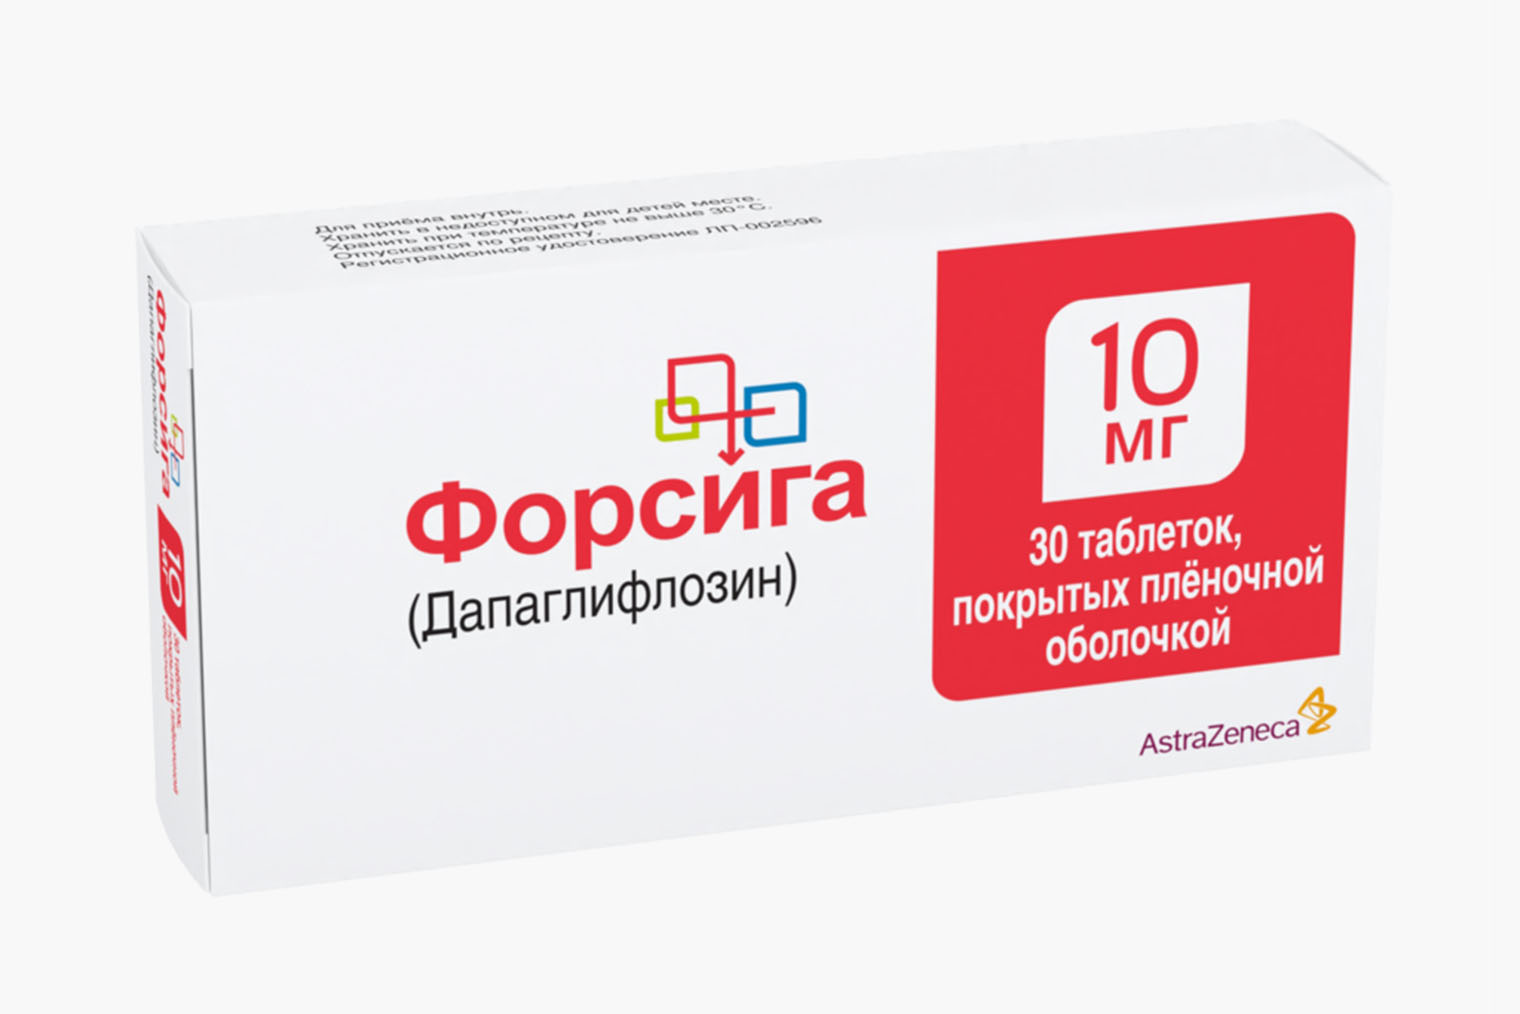 Единственный препарат с дапаглифлозином без других лекарственных соединений. Источник: eapteka.ru